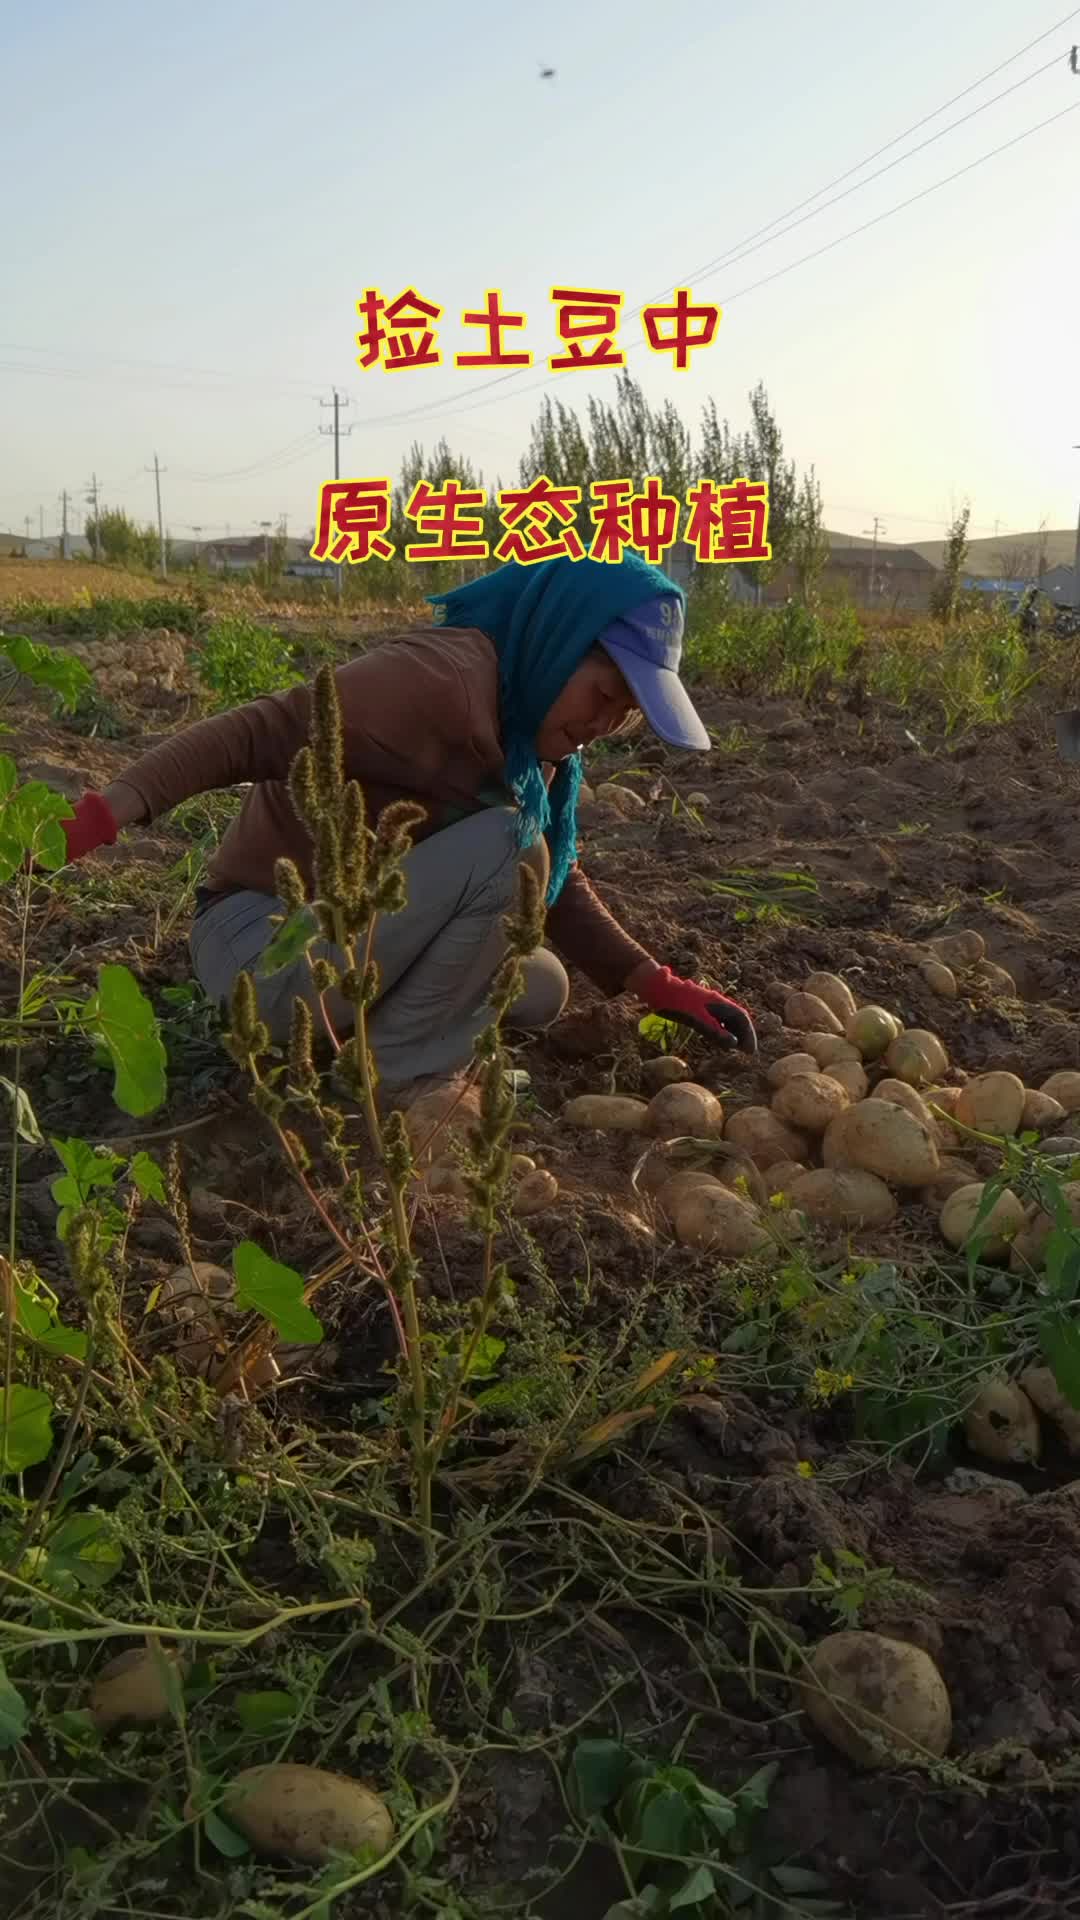 凉山马铃薯（包括昭觉土豆）·马铃薯——第六届四川农业博览会最受欢迎农产品评选